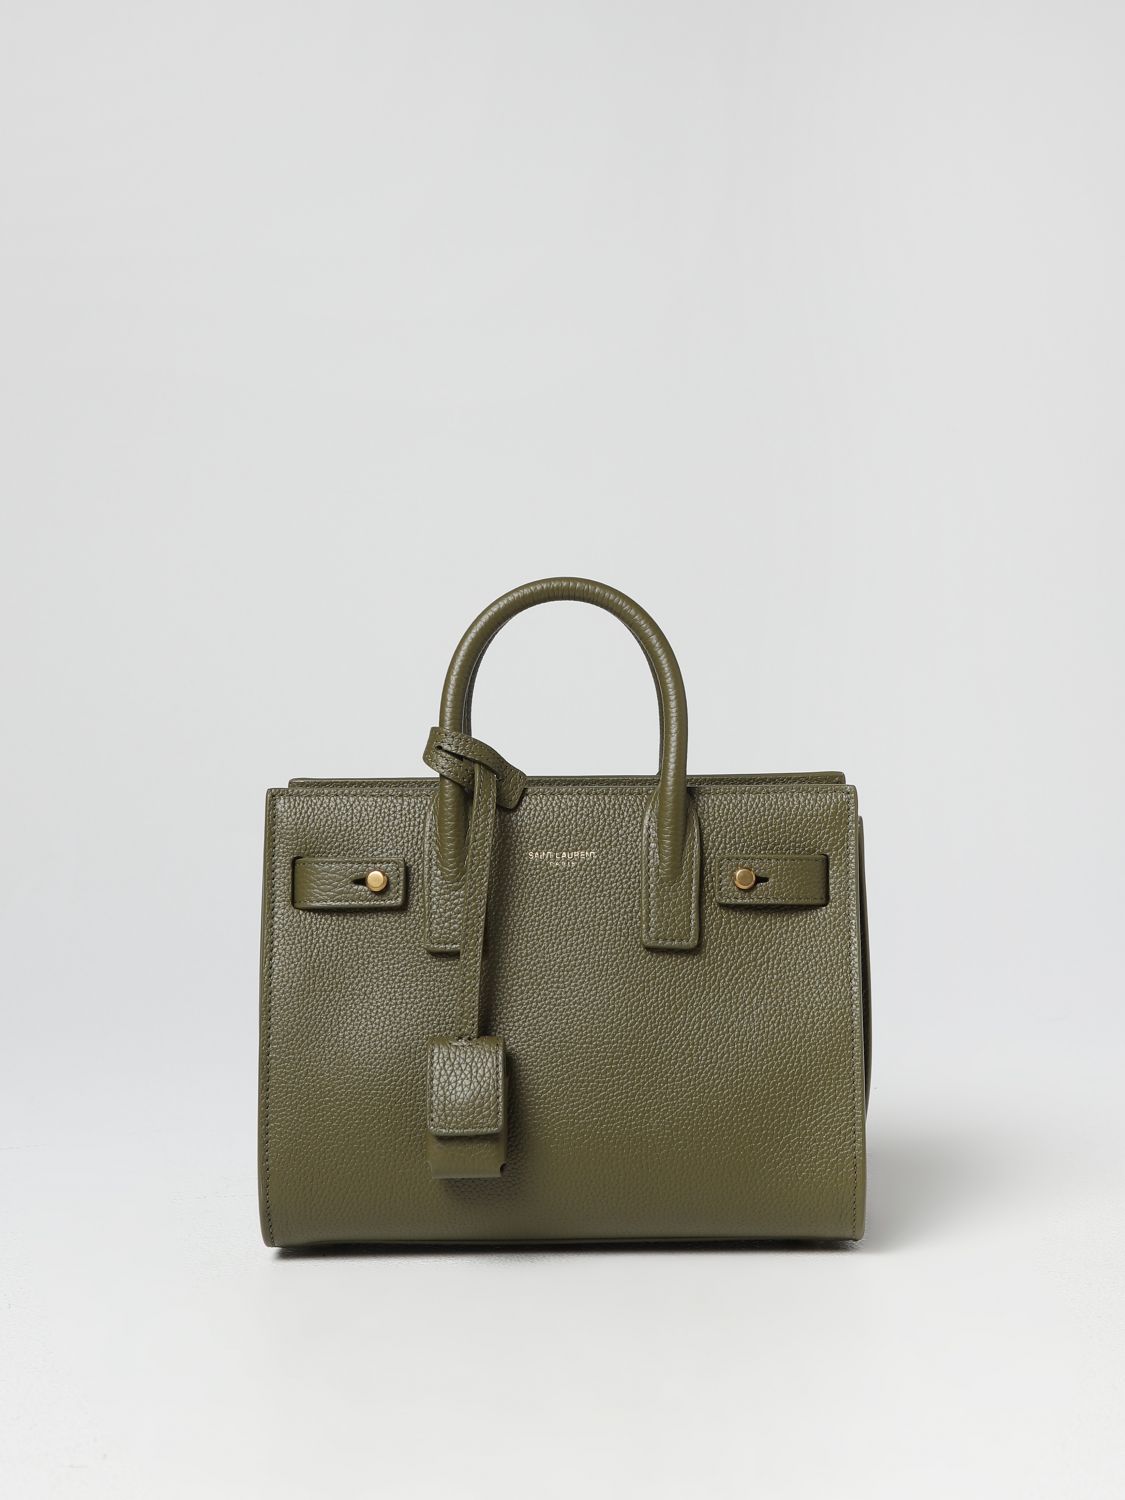 SAINT LAURENT: Sac De Jour bag in textured leather - Green